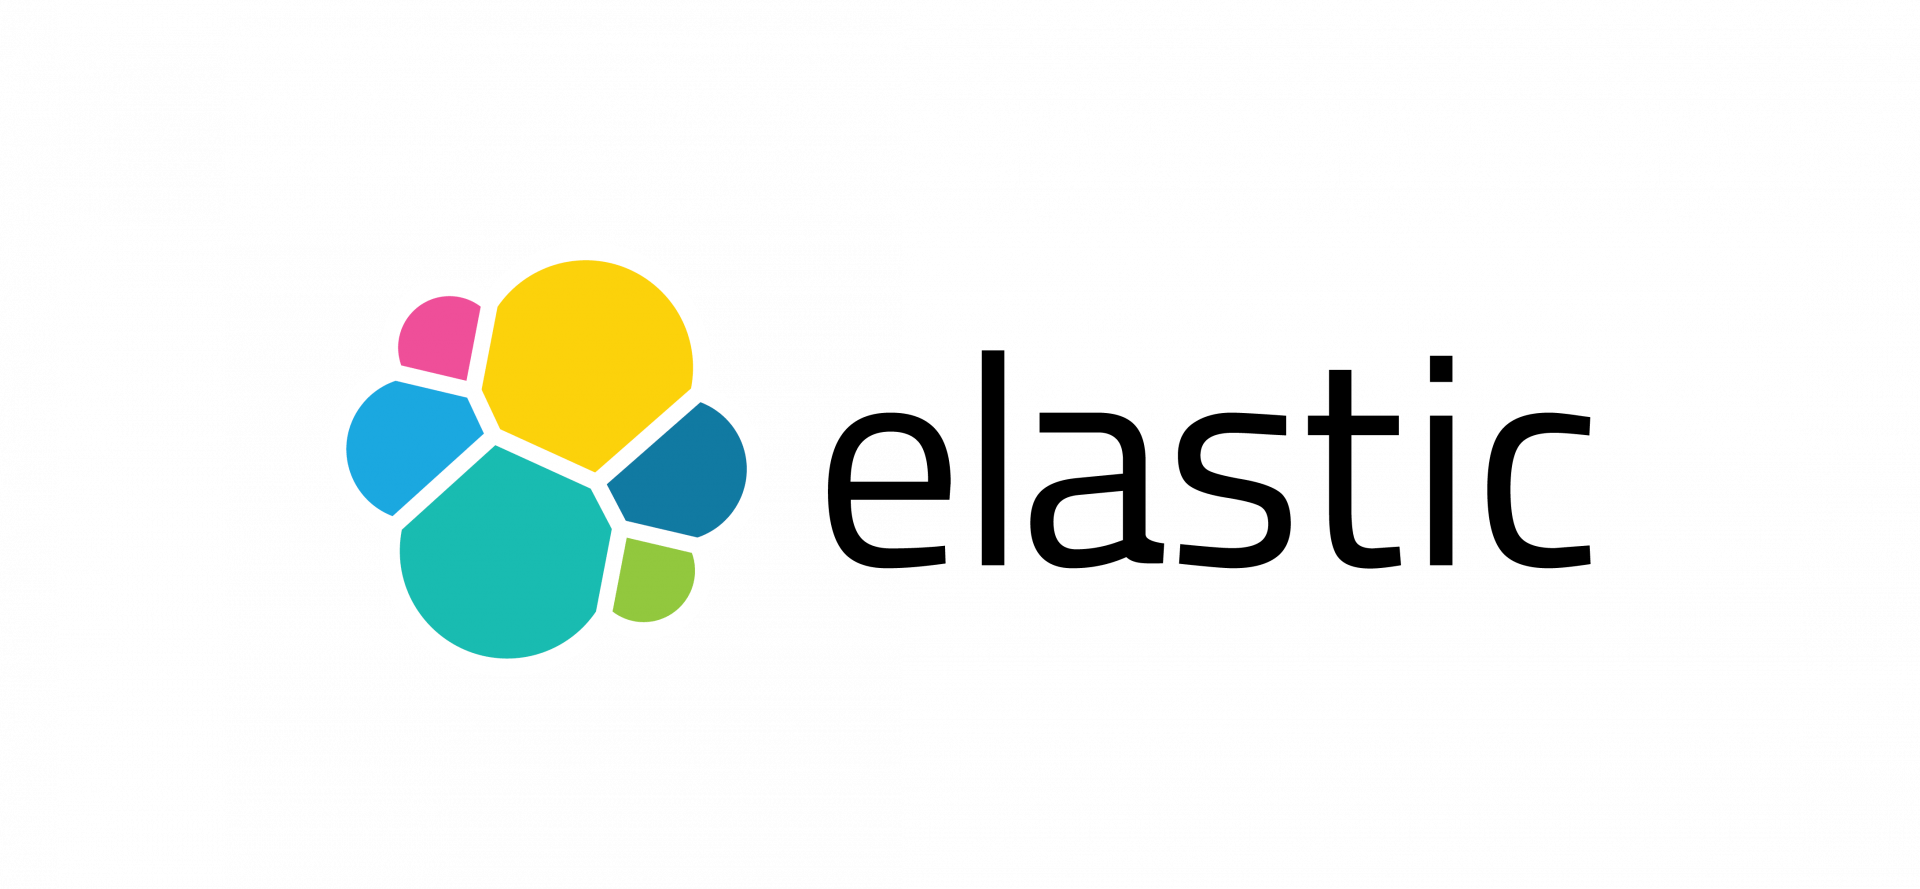 Elasticsearch gestión de busqueda avanzada